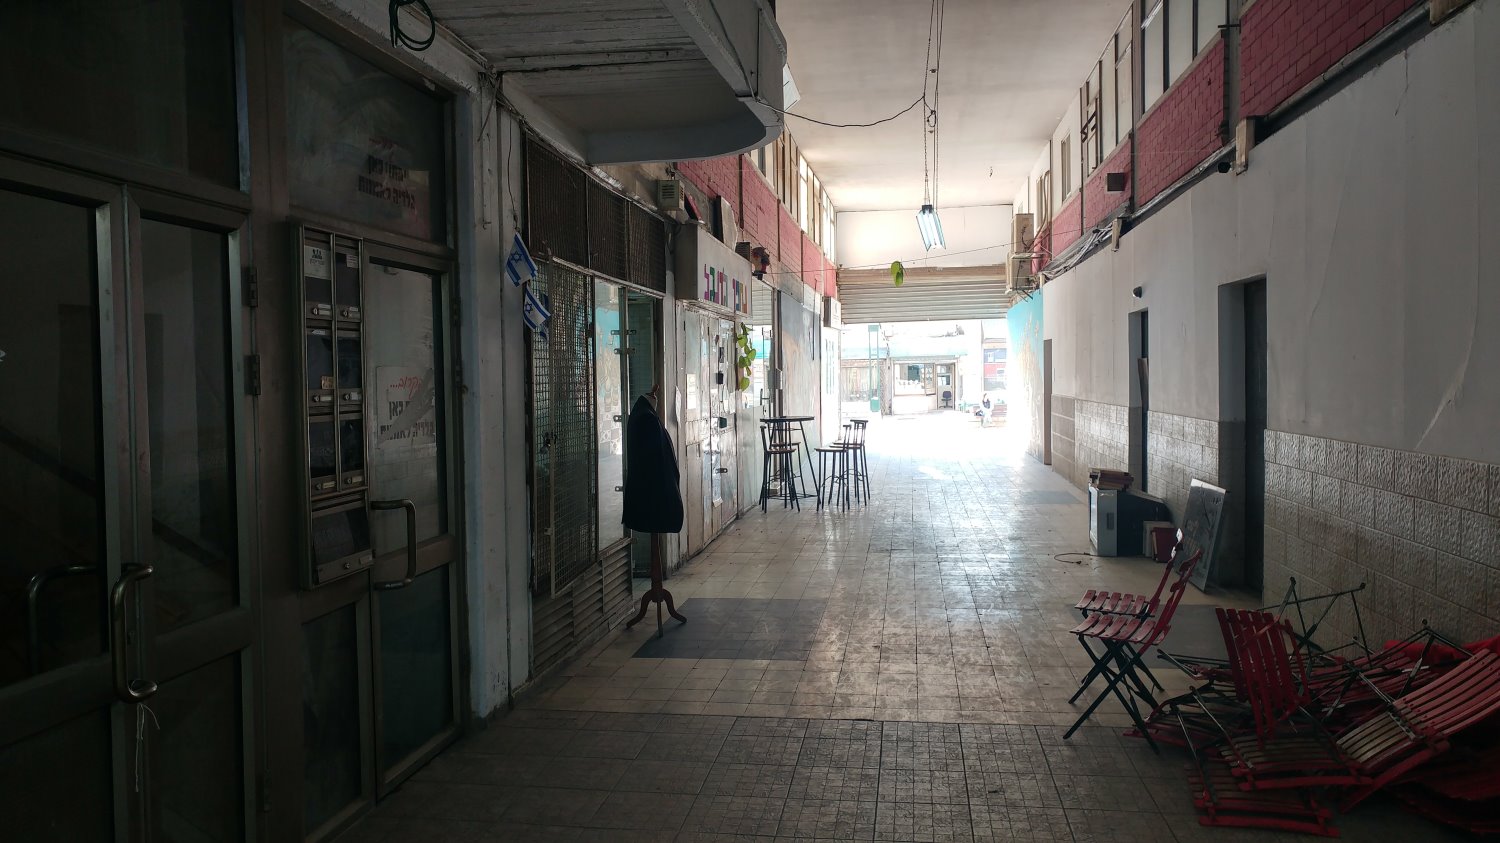 "רוב העסקים בבאר שבע נפגעו". עסקים סגורים בעיר העתיקה בבאר שבע. צילום: שרון טל